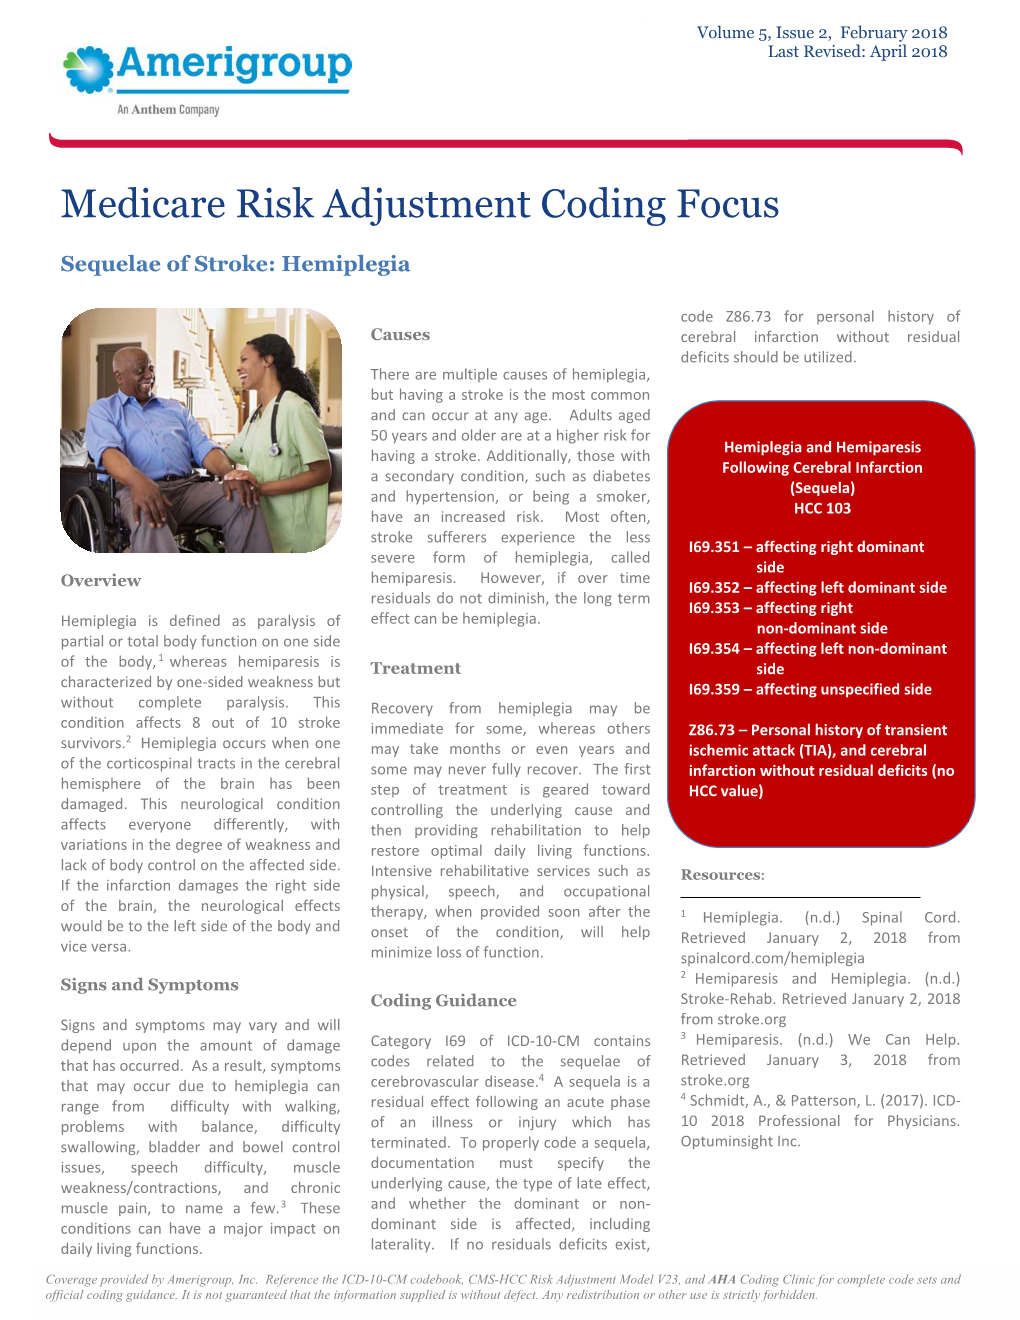 Medicare Risk Adjustment Coding Focus